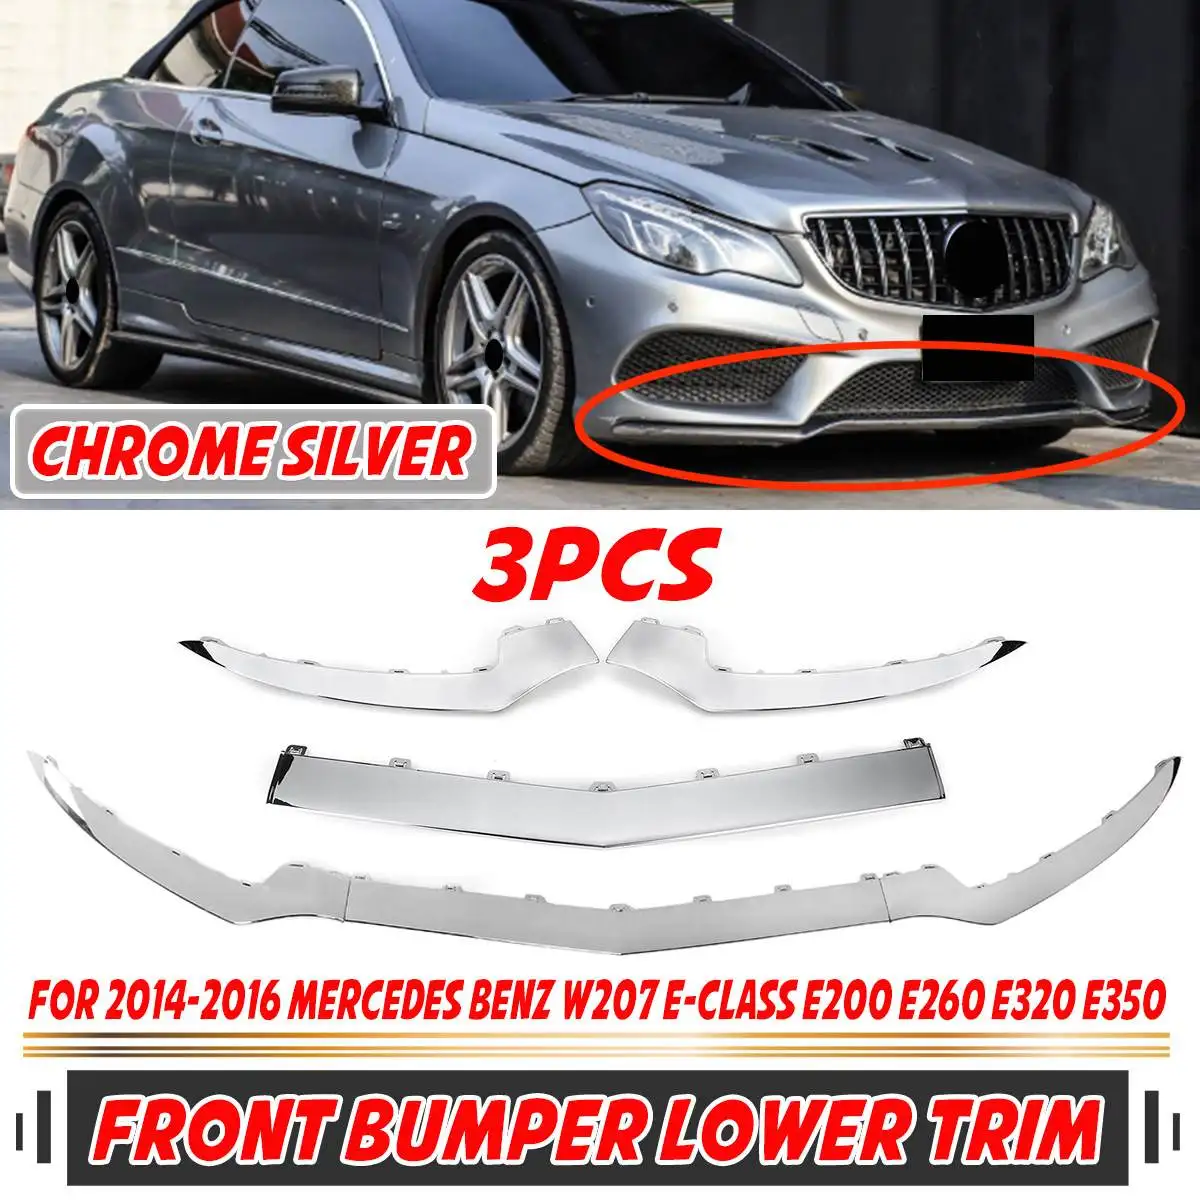 

3pc Car Front Bumper Lip Body Kit Spoiler Splitter Diffuser Lip For Mercedes For Benz W207 A207 C207 E-Class E320 E350 2014-2016